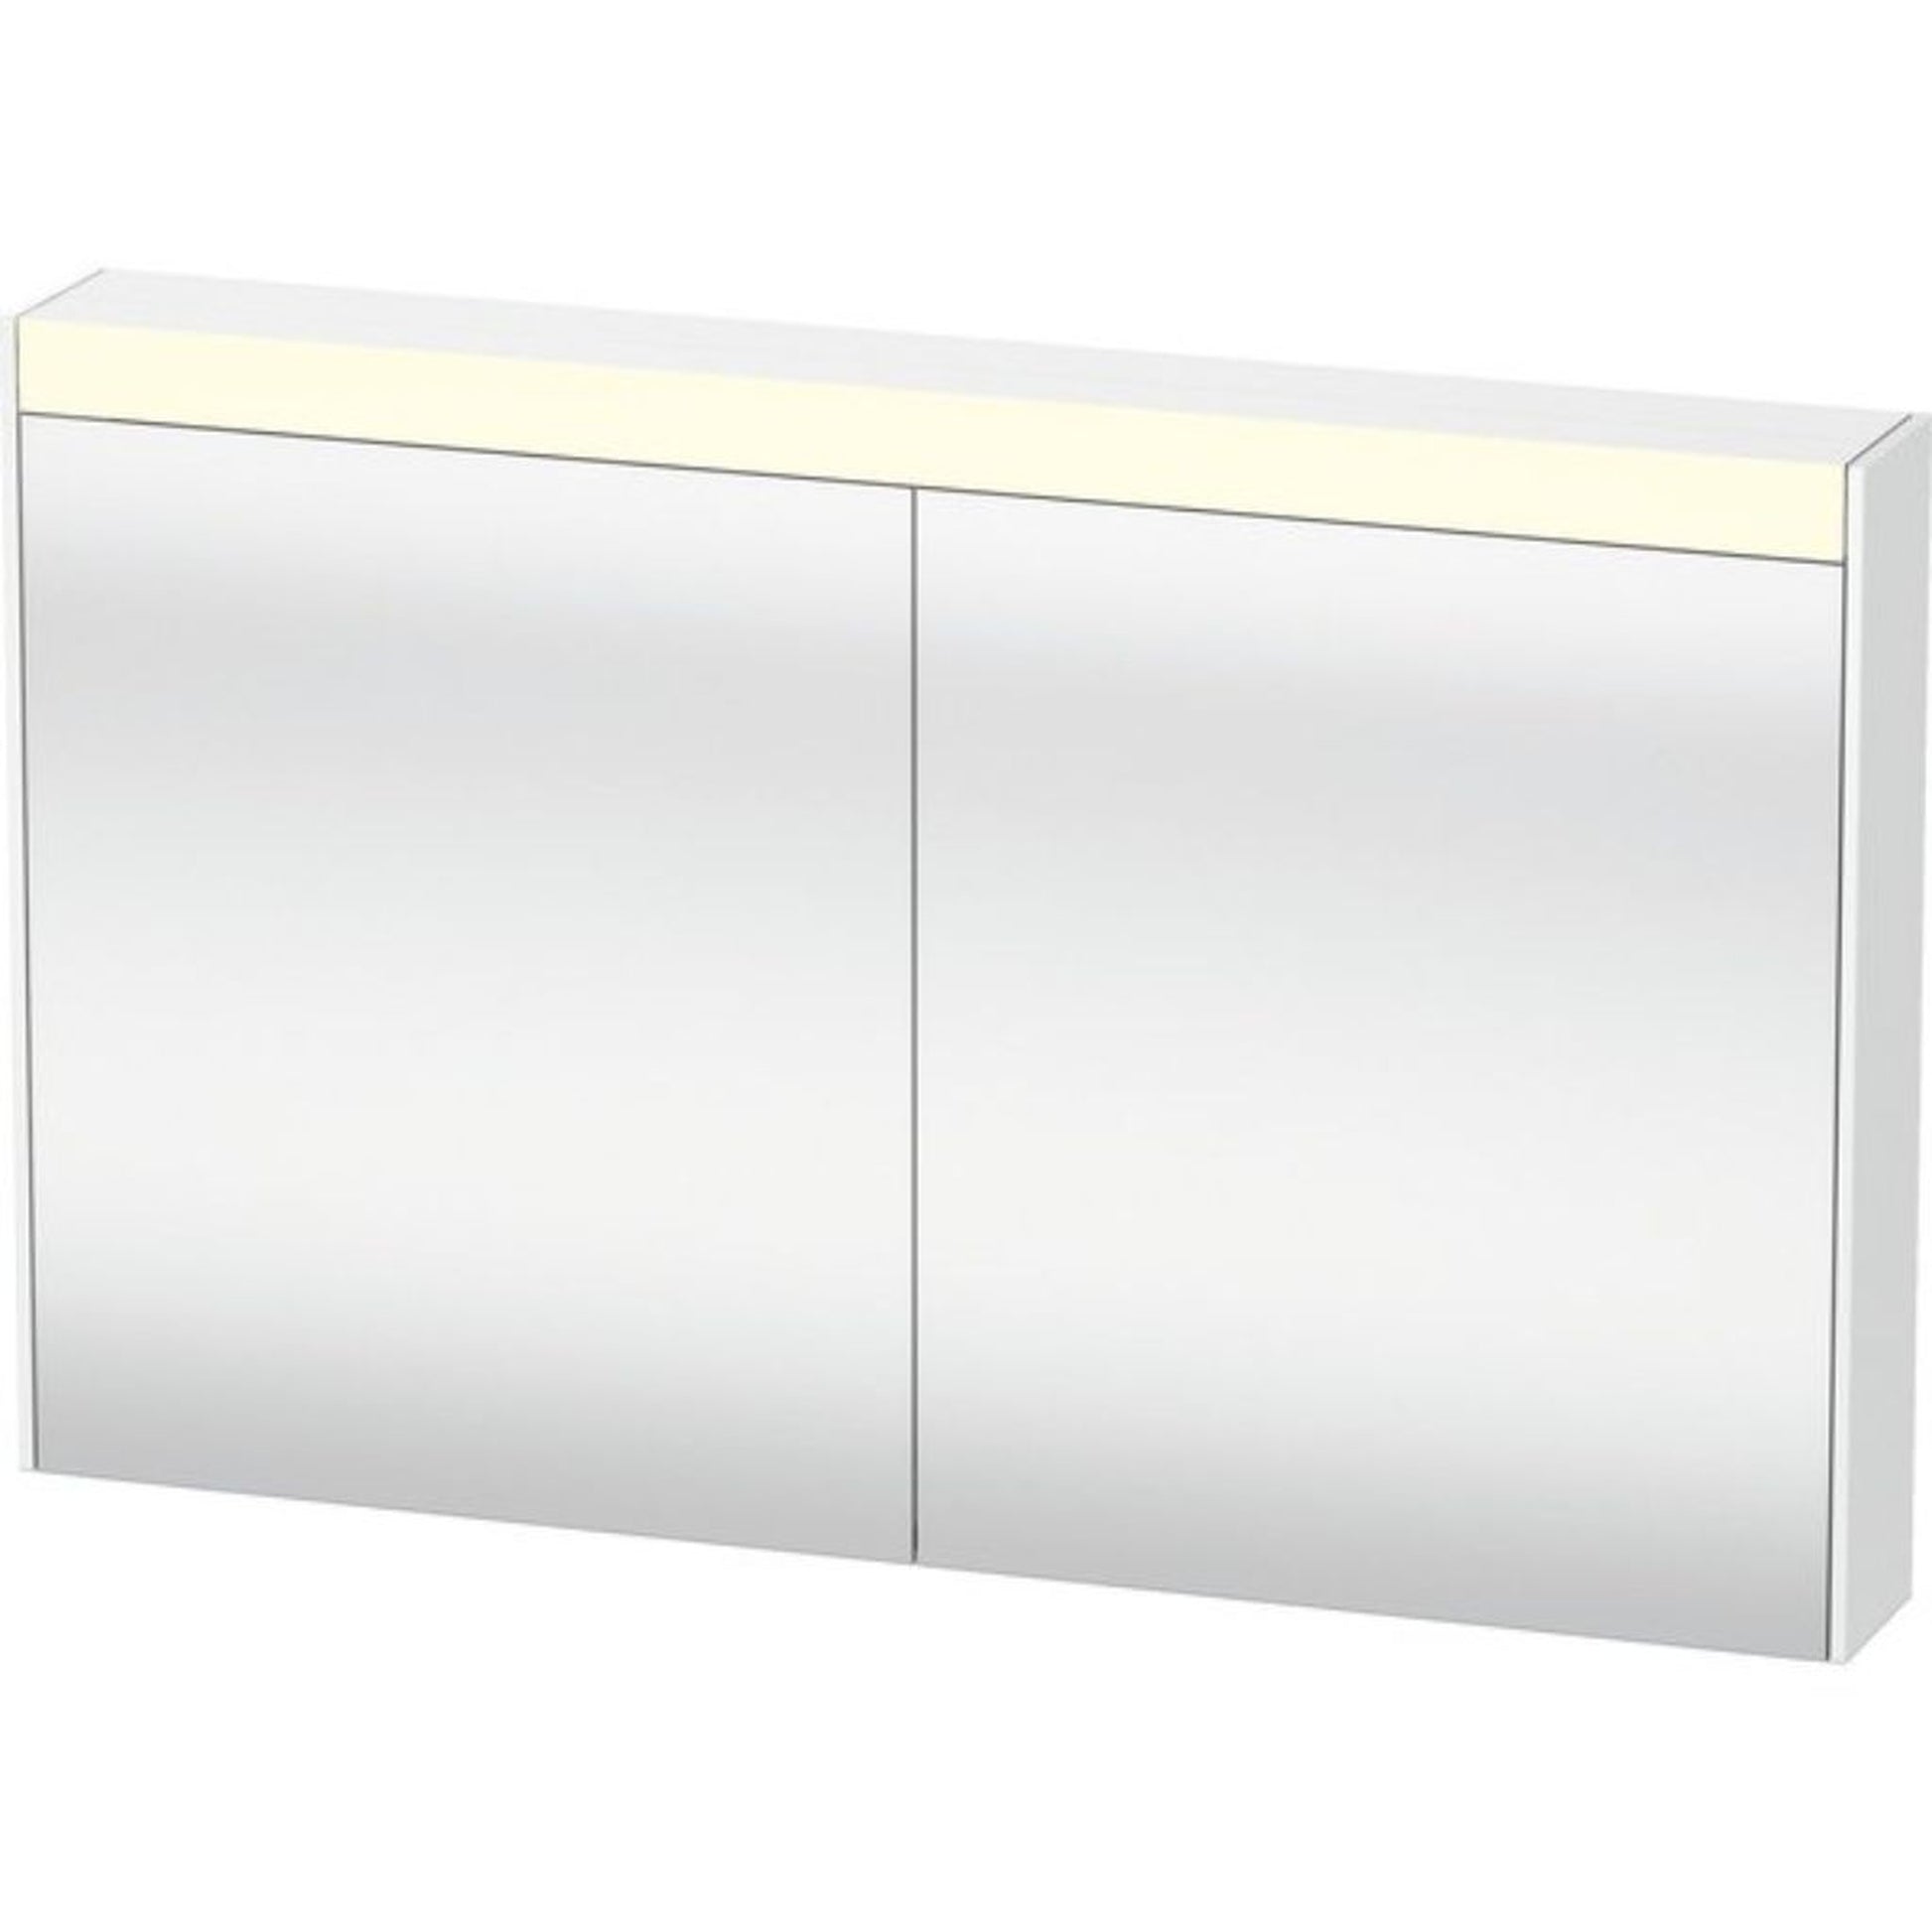 Duravit Brioso 40" x 30" x 6" Mirror Cabinet With Lighting White Matt